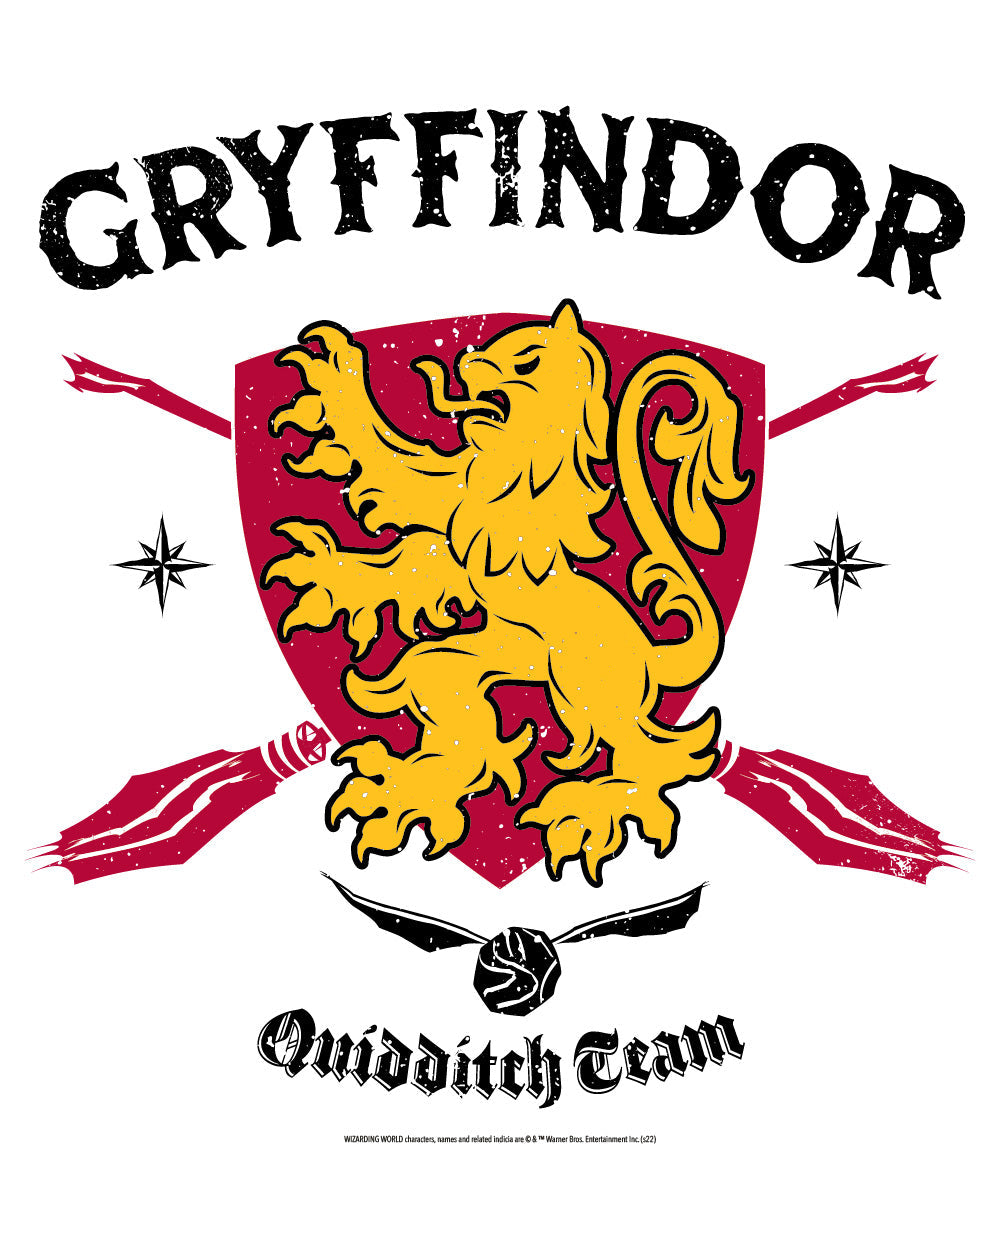 Harry Potter Gryffindor Quidditch Team Hogwarts Witchcraft Wizardry School Officially Licensed Cotton T-Shirt